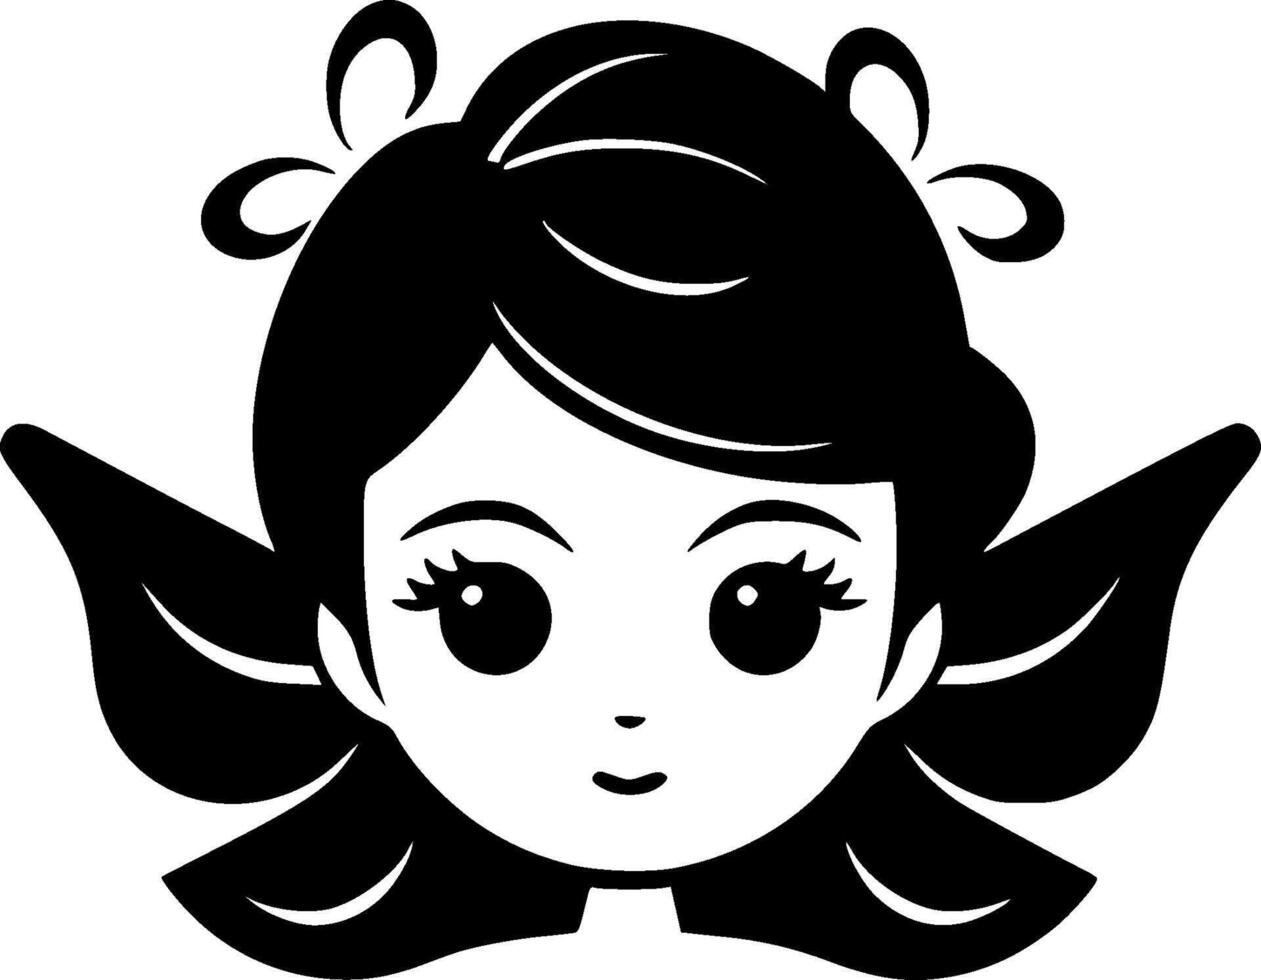 fee - minimalistische en vlak logo - vector illustratie